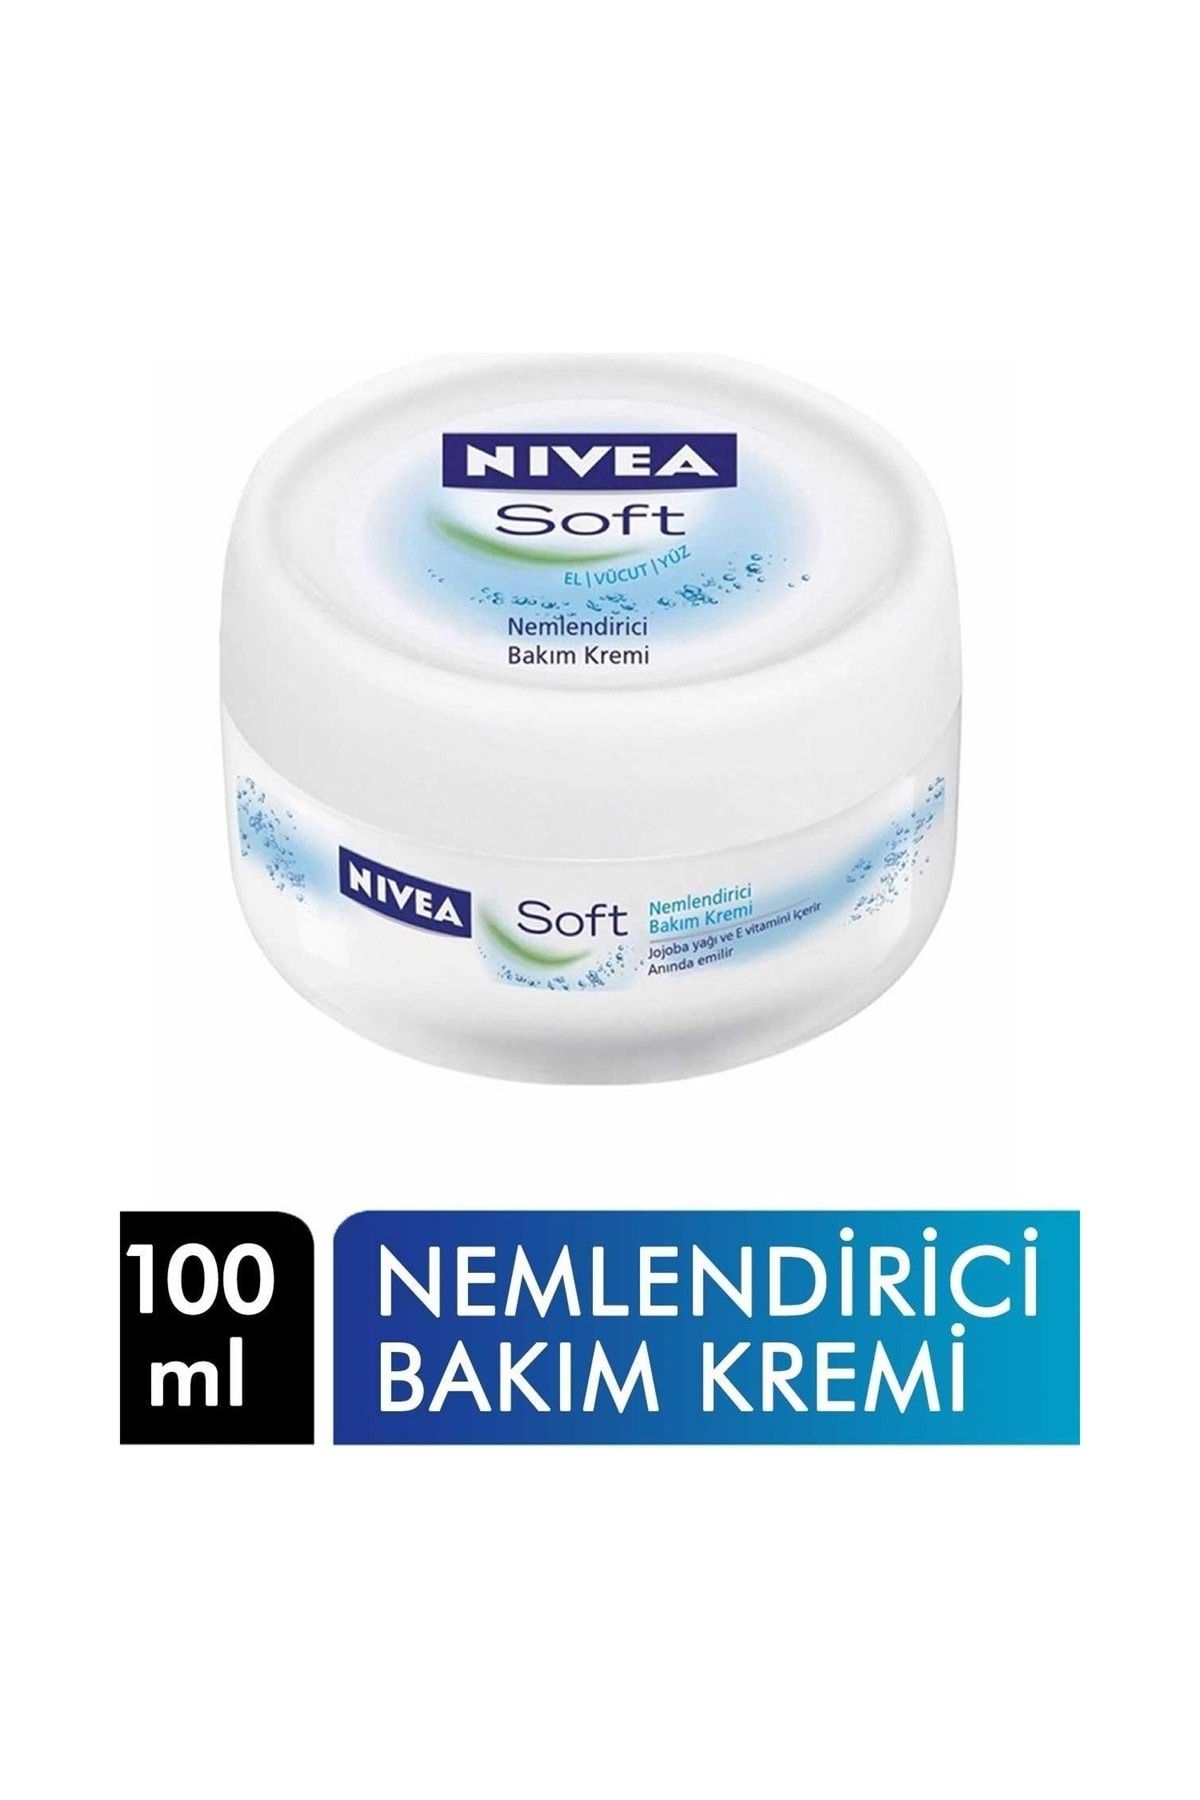 NIVEA Soft Bakım Kremi 100 ml Nemlendirici